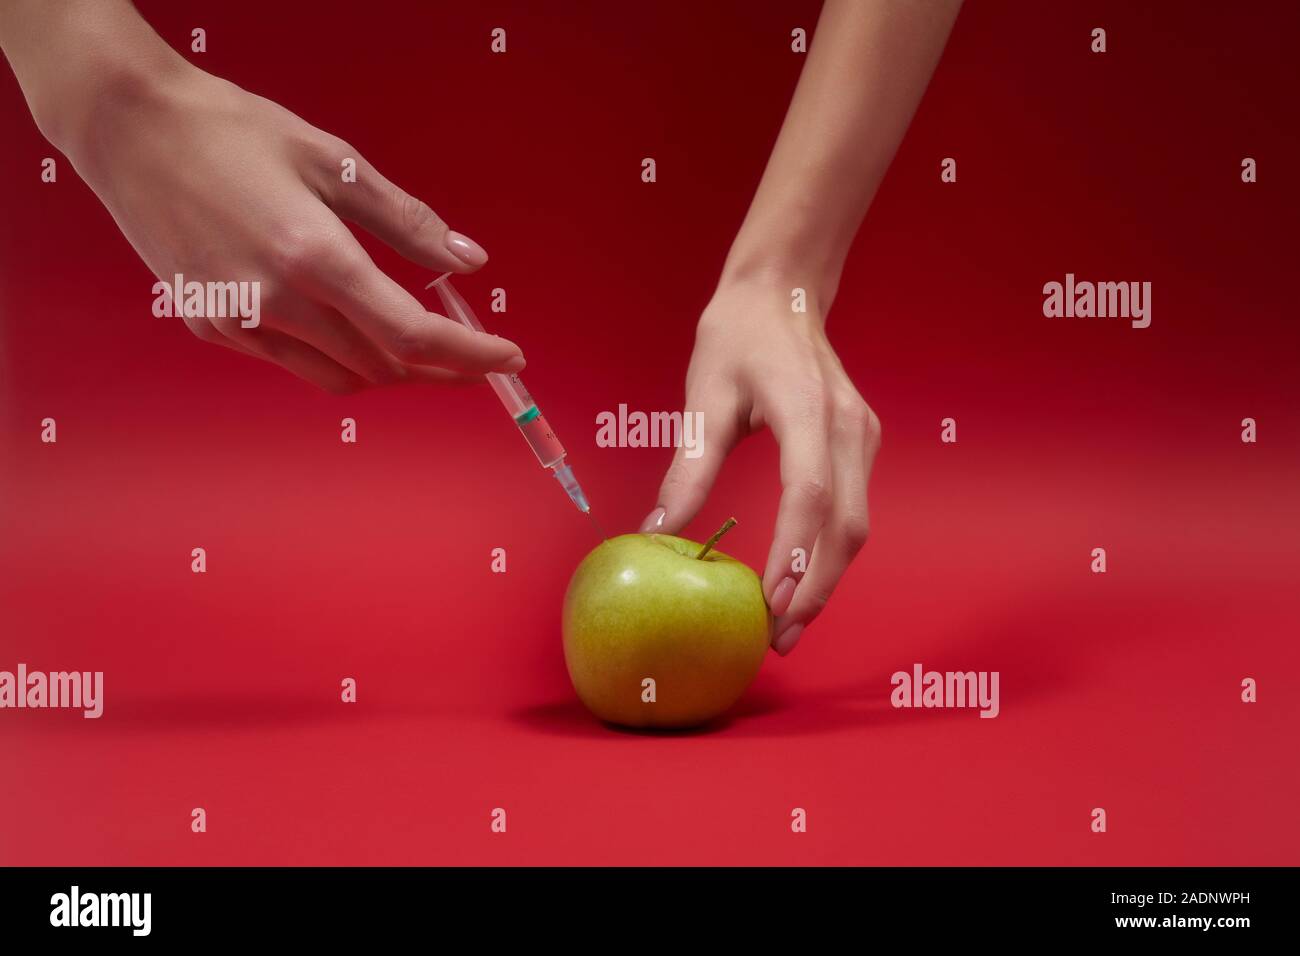 Die Hände der schönen Frau spritzen Gift in den grünen apfel. Spritze mit  Flüssigkeit in Obst. Foto des Konzepts "GMO". Vergiftete Lebensmittel auf  rotem Hintergrund Stockfotografie - Alamy